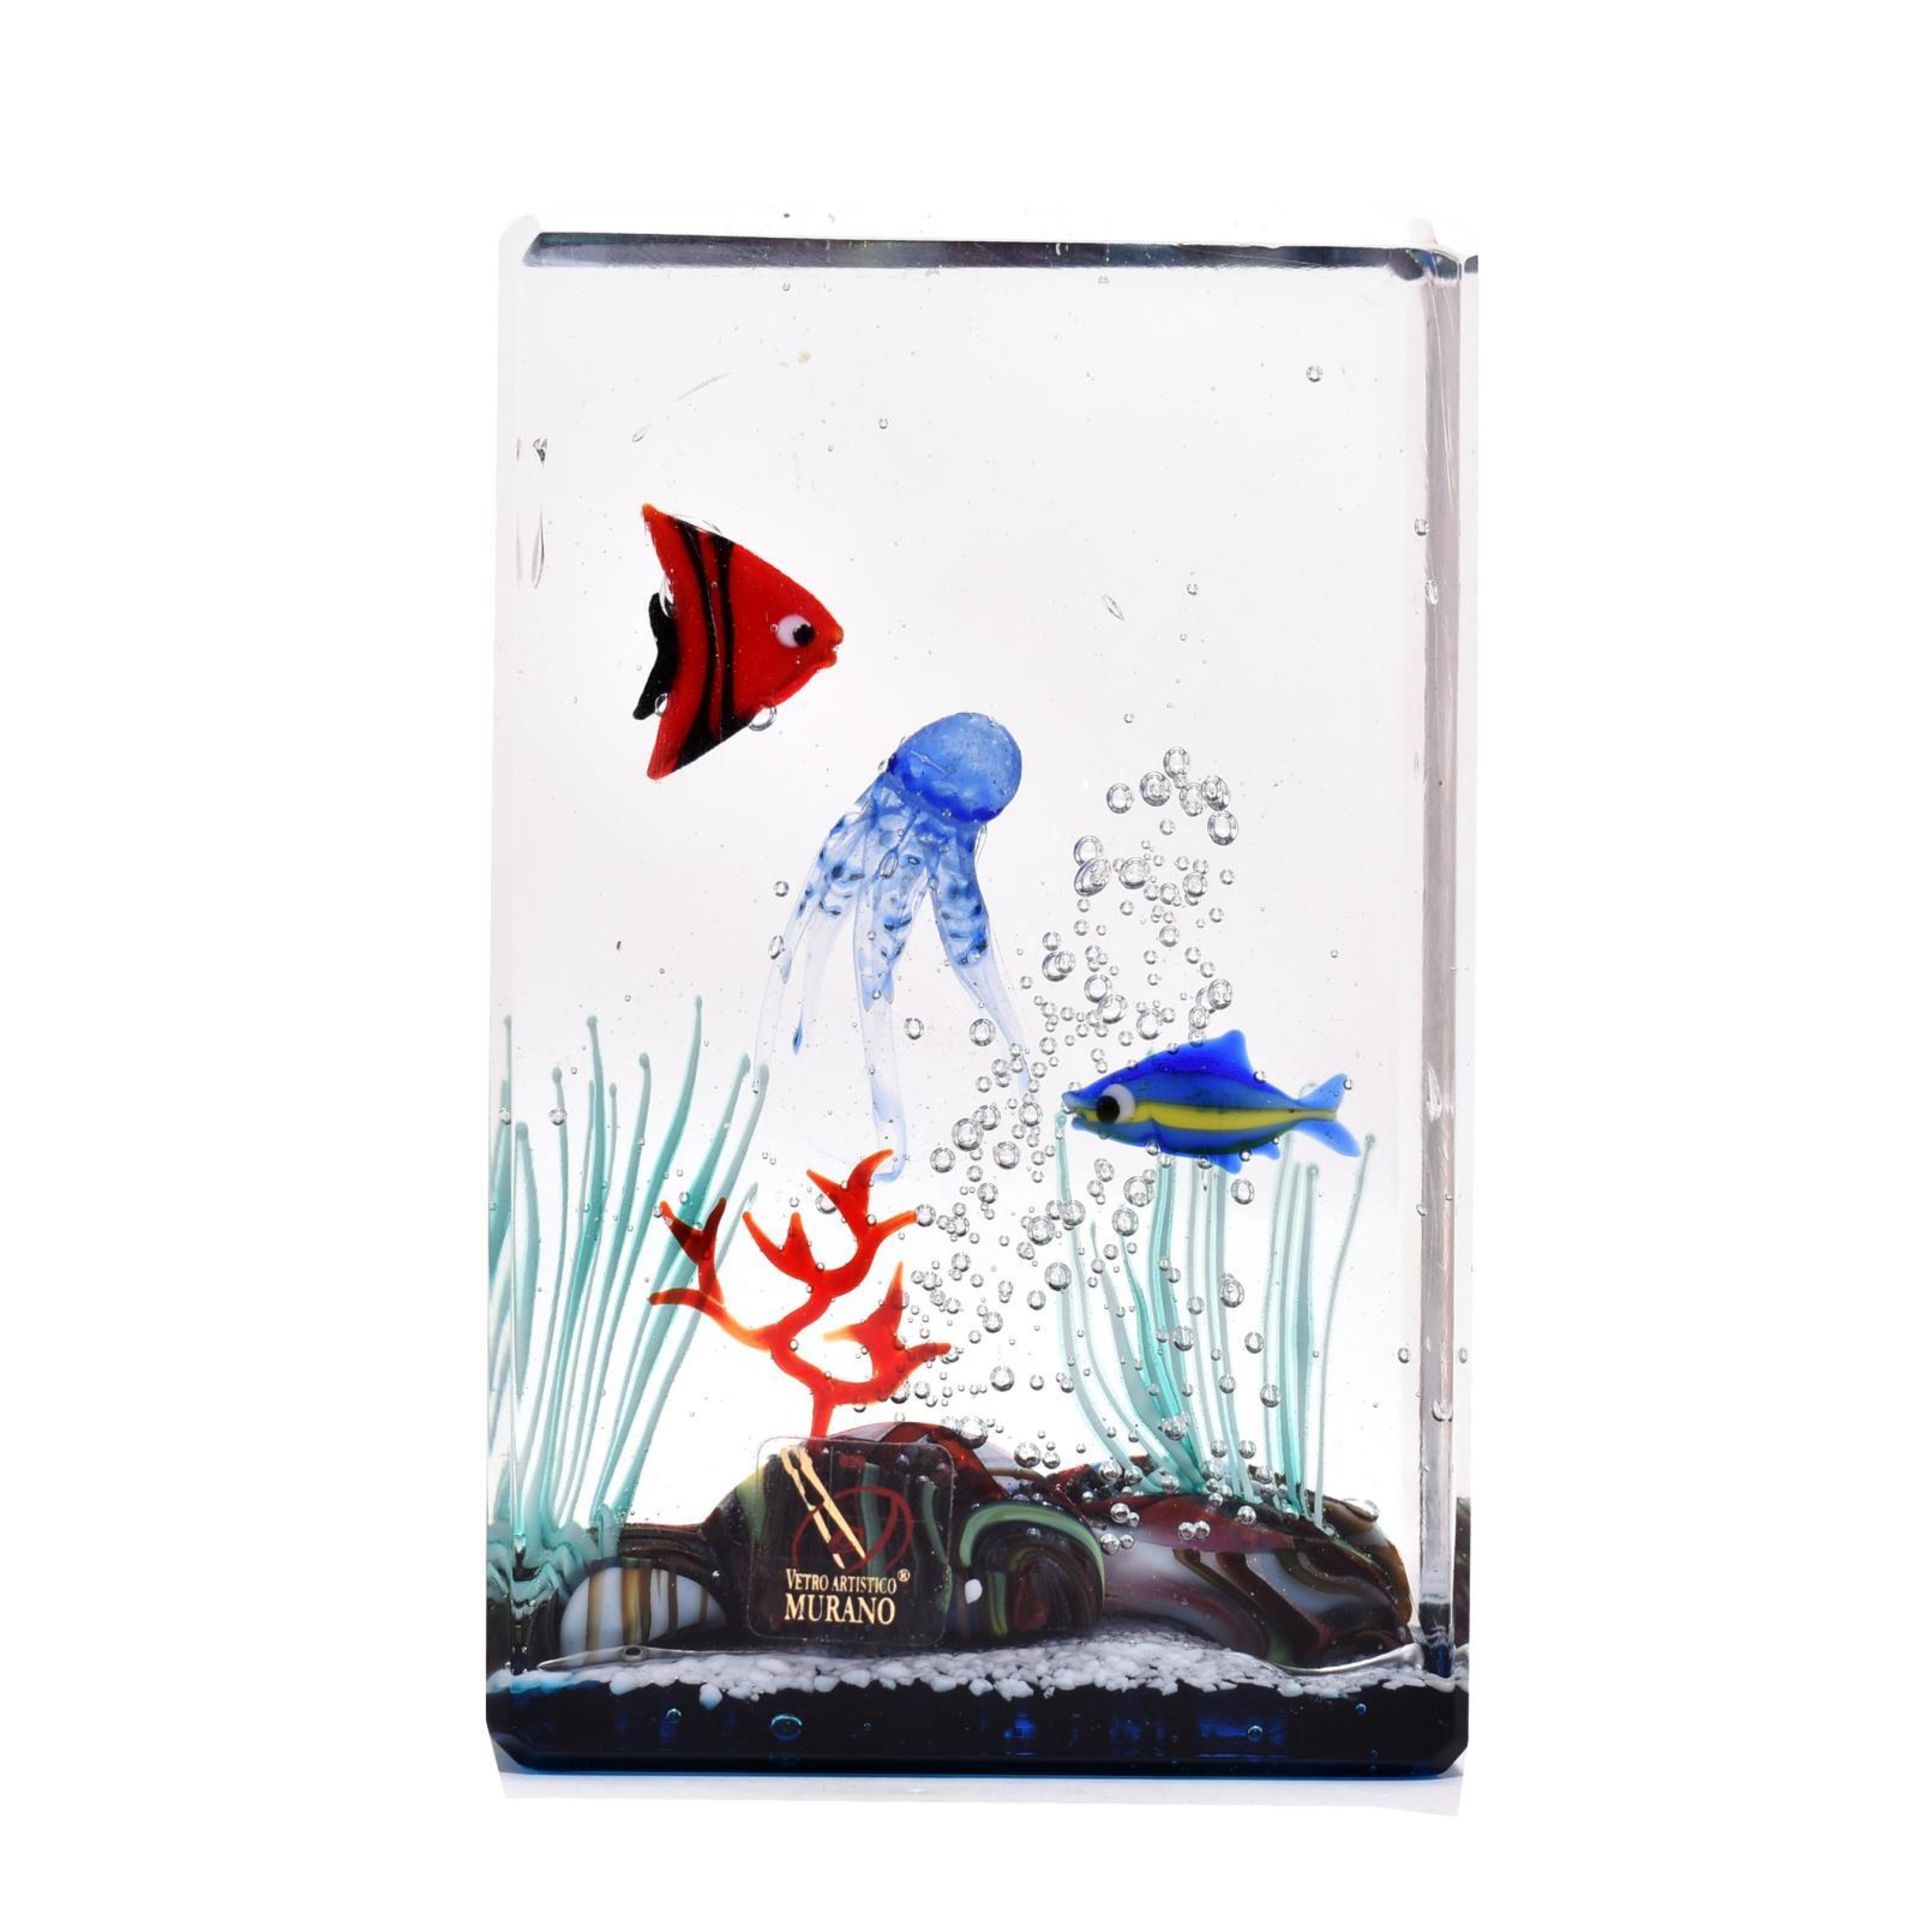 Hochrechteckiger Paperweight in Form eines Aquariums. Murano, 20. Jh. | Farbloses Glas mit Luftbl...